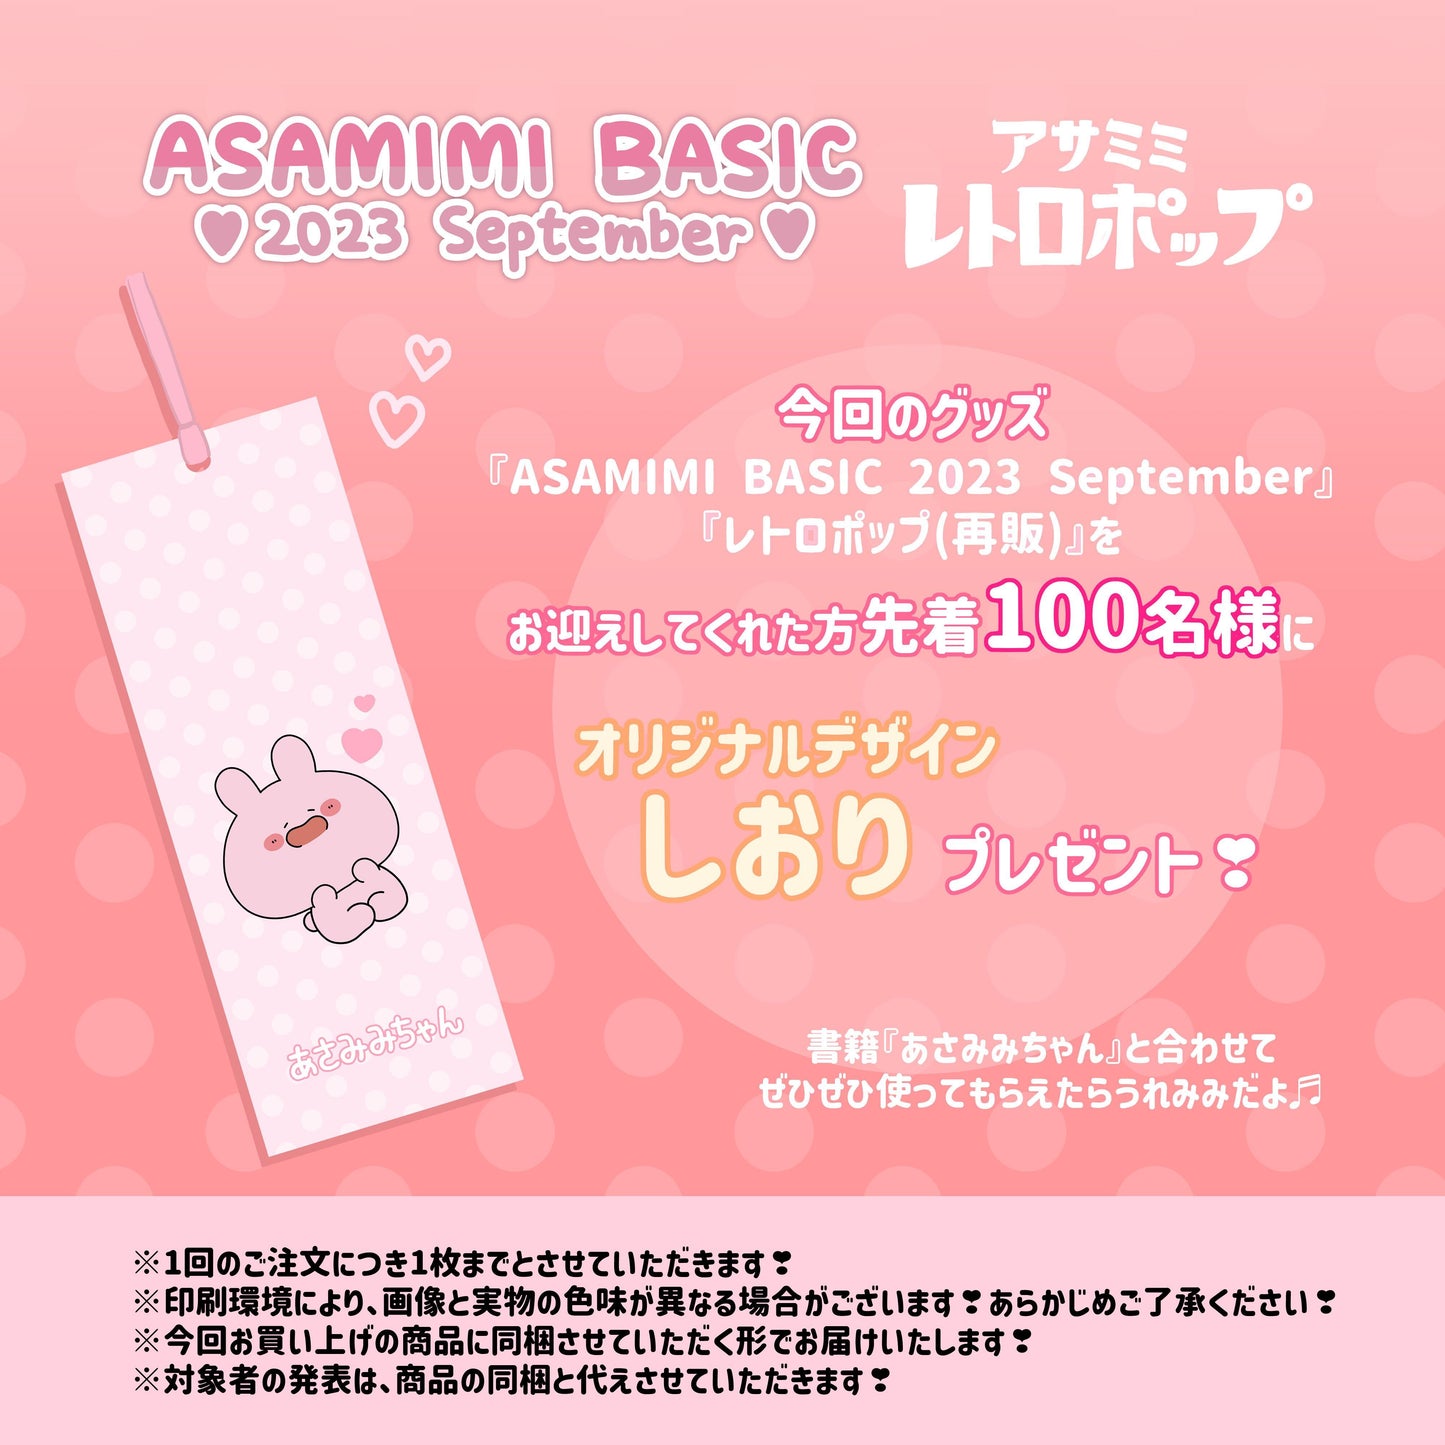 [Asamimi-chan] Acrylic key chain (Ramune) (retro) [shipped in mid-November]